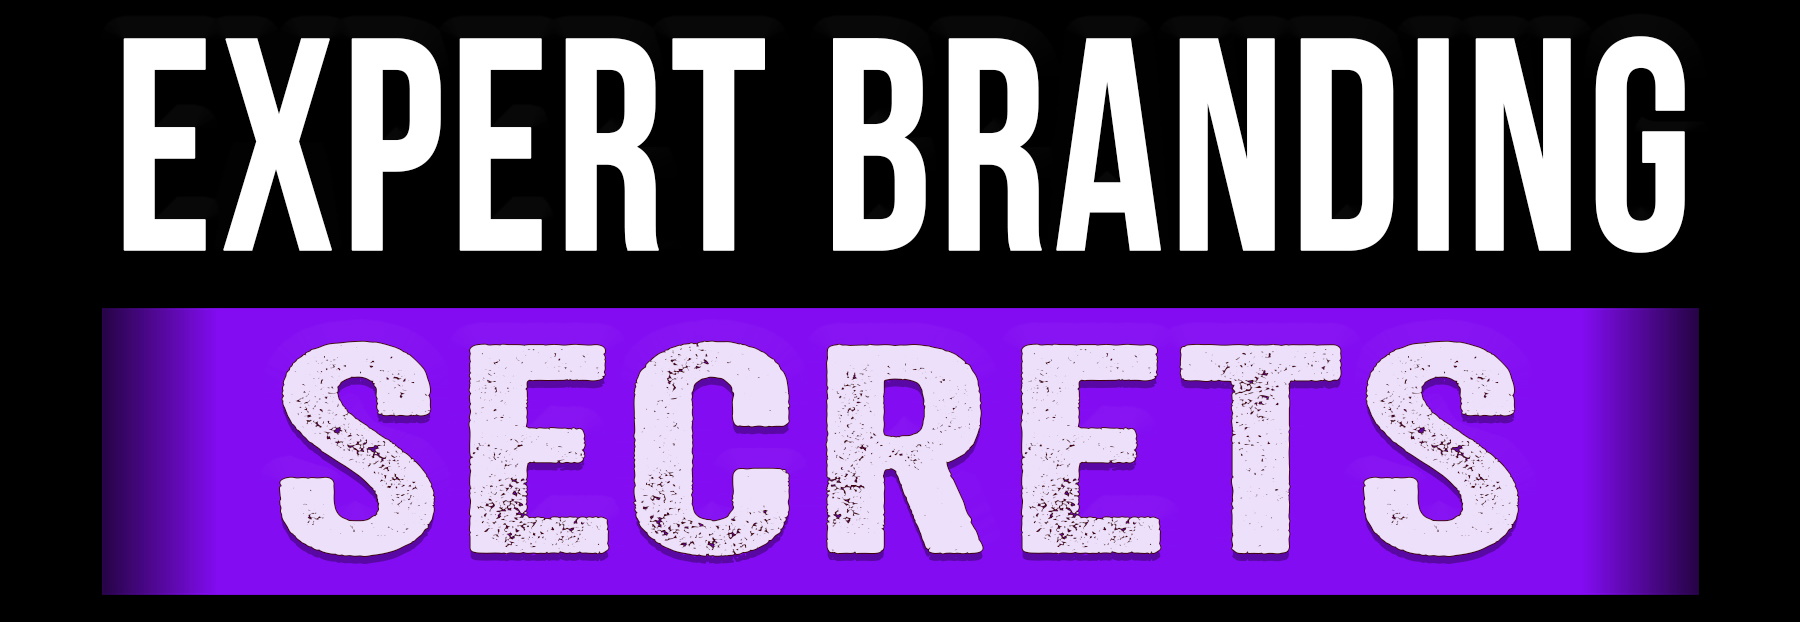 Expert Branding Secrets logo